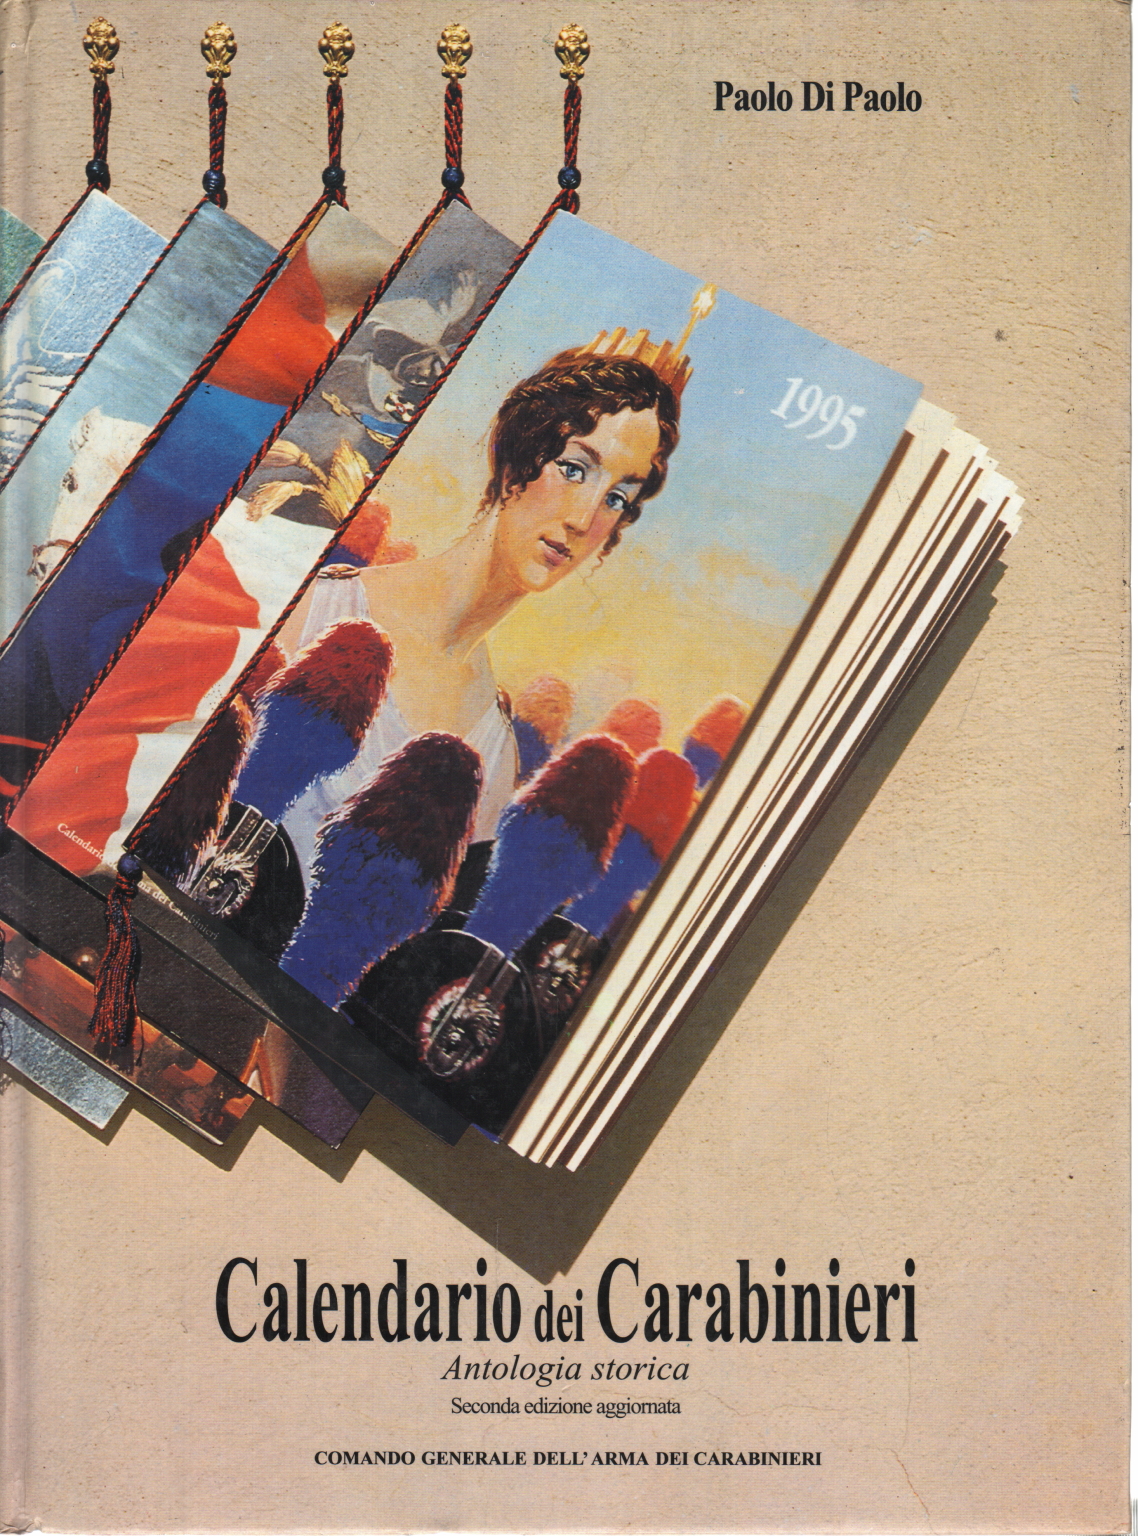 Calendario dei Carabinieri, Paolo di Paolo